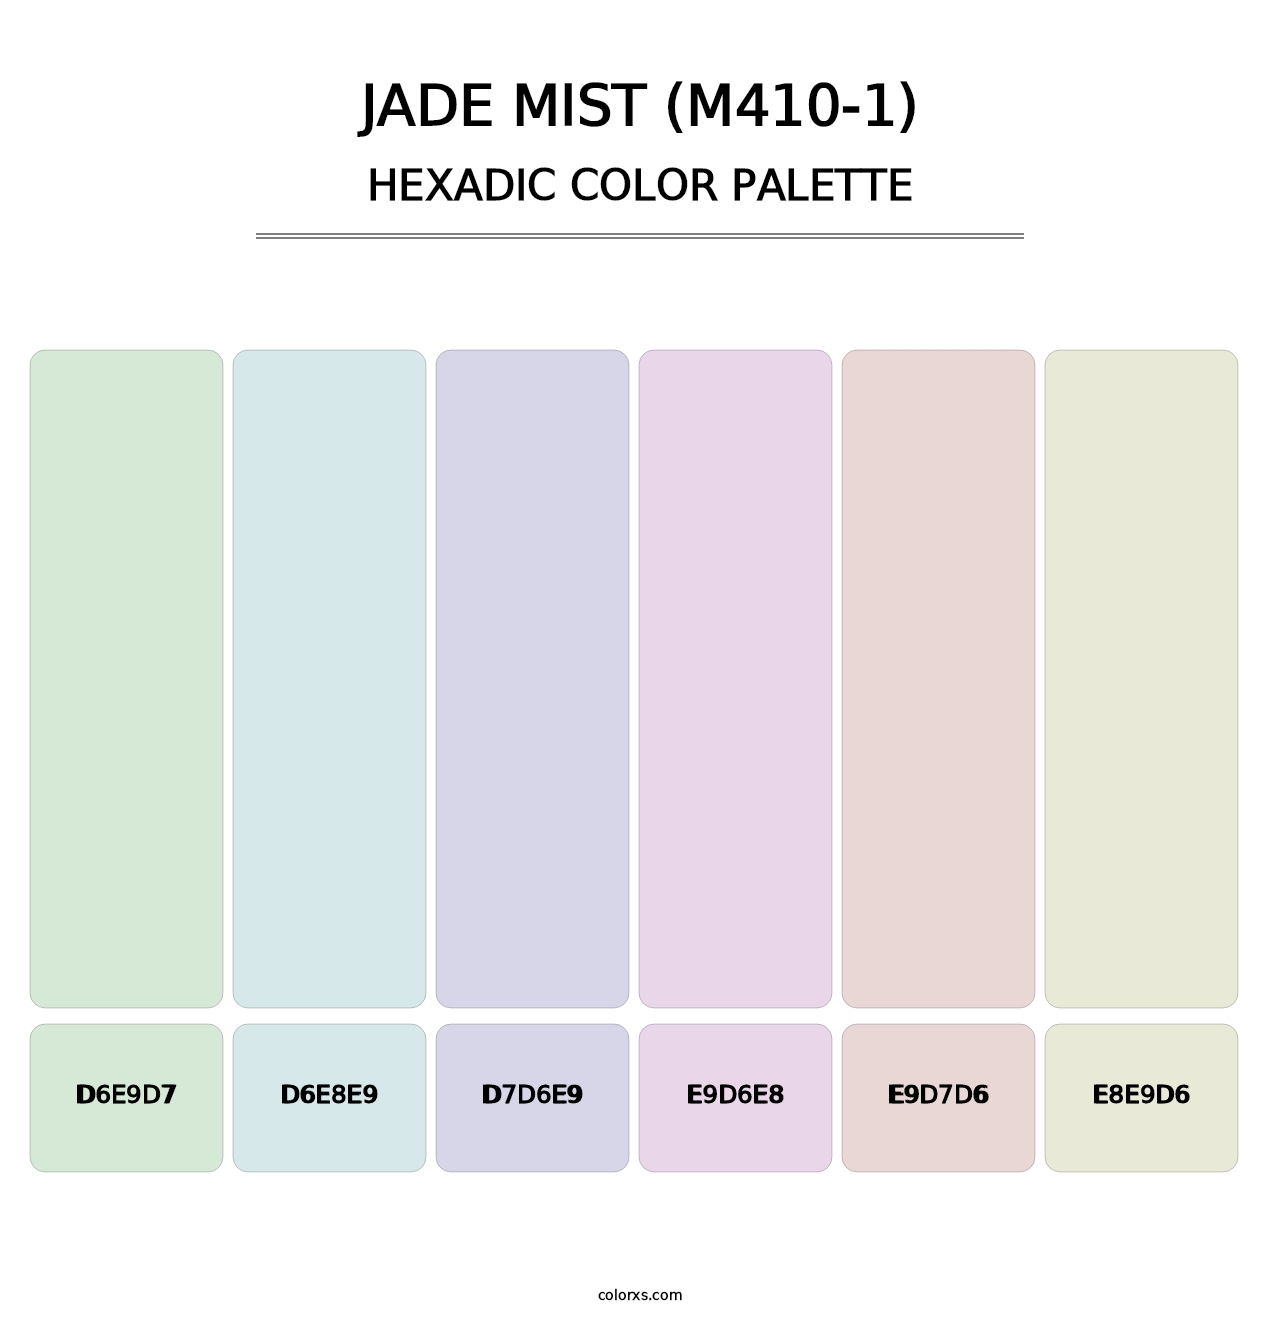 Jade Mist (M410-1) - Hexadic Color Palette